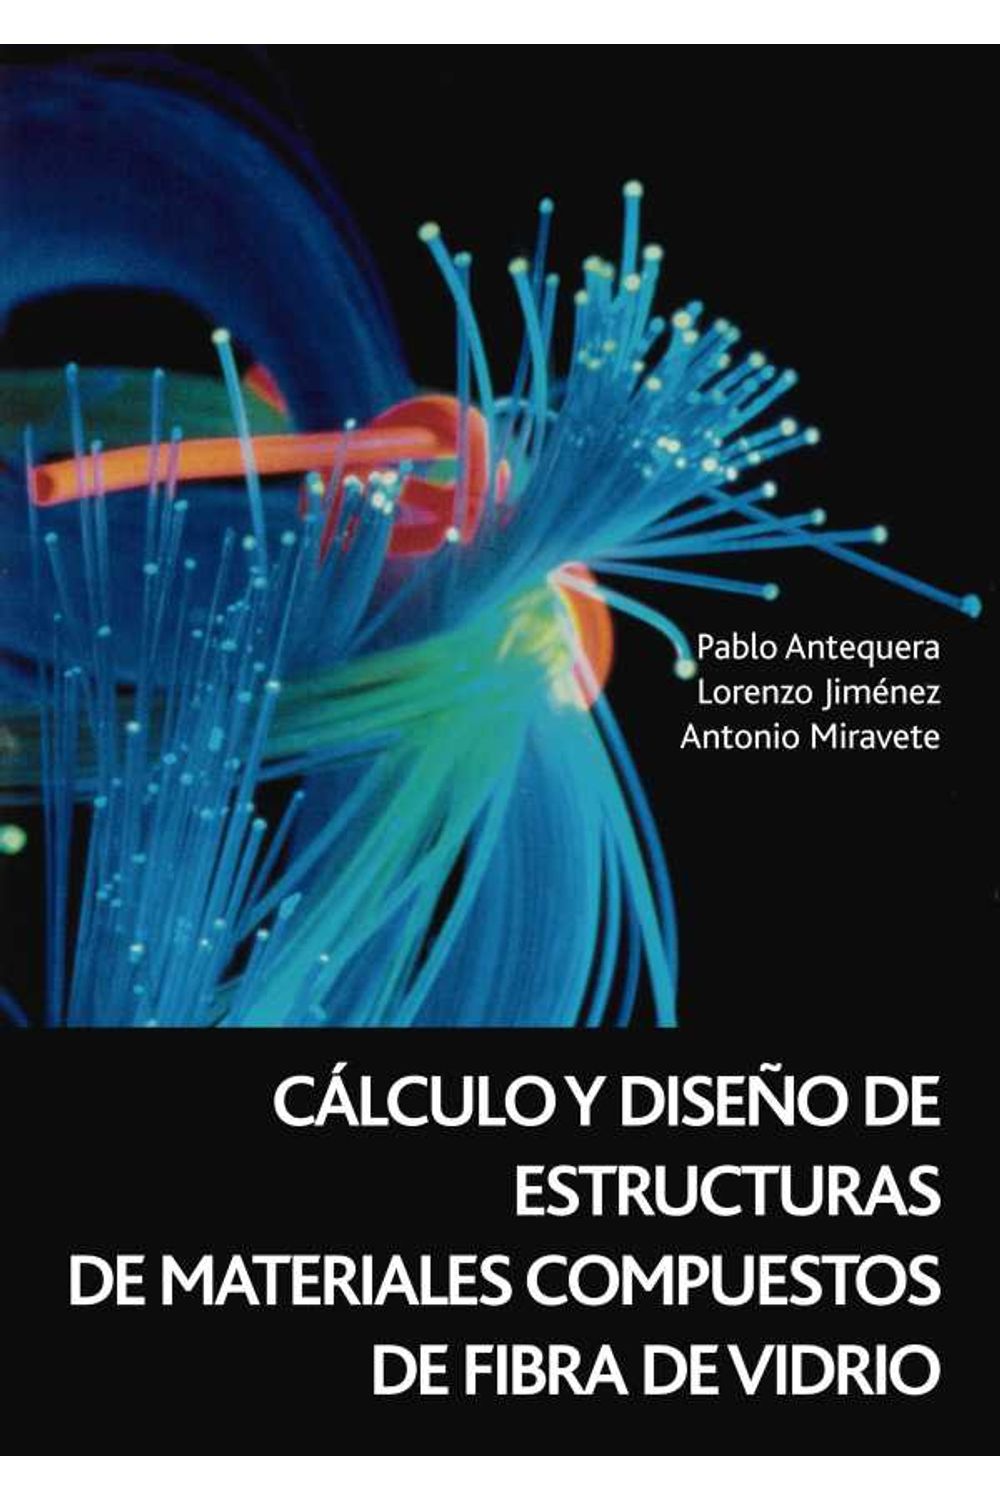 bw-caacutelculo-y-disentildeo-de-estructuras-de-materiales-compuestos-de-fibra-de-vidrio-reverte-9788429196665